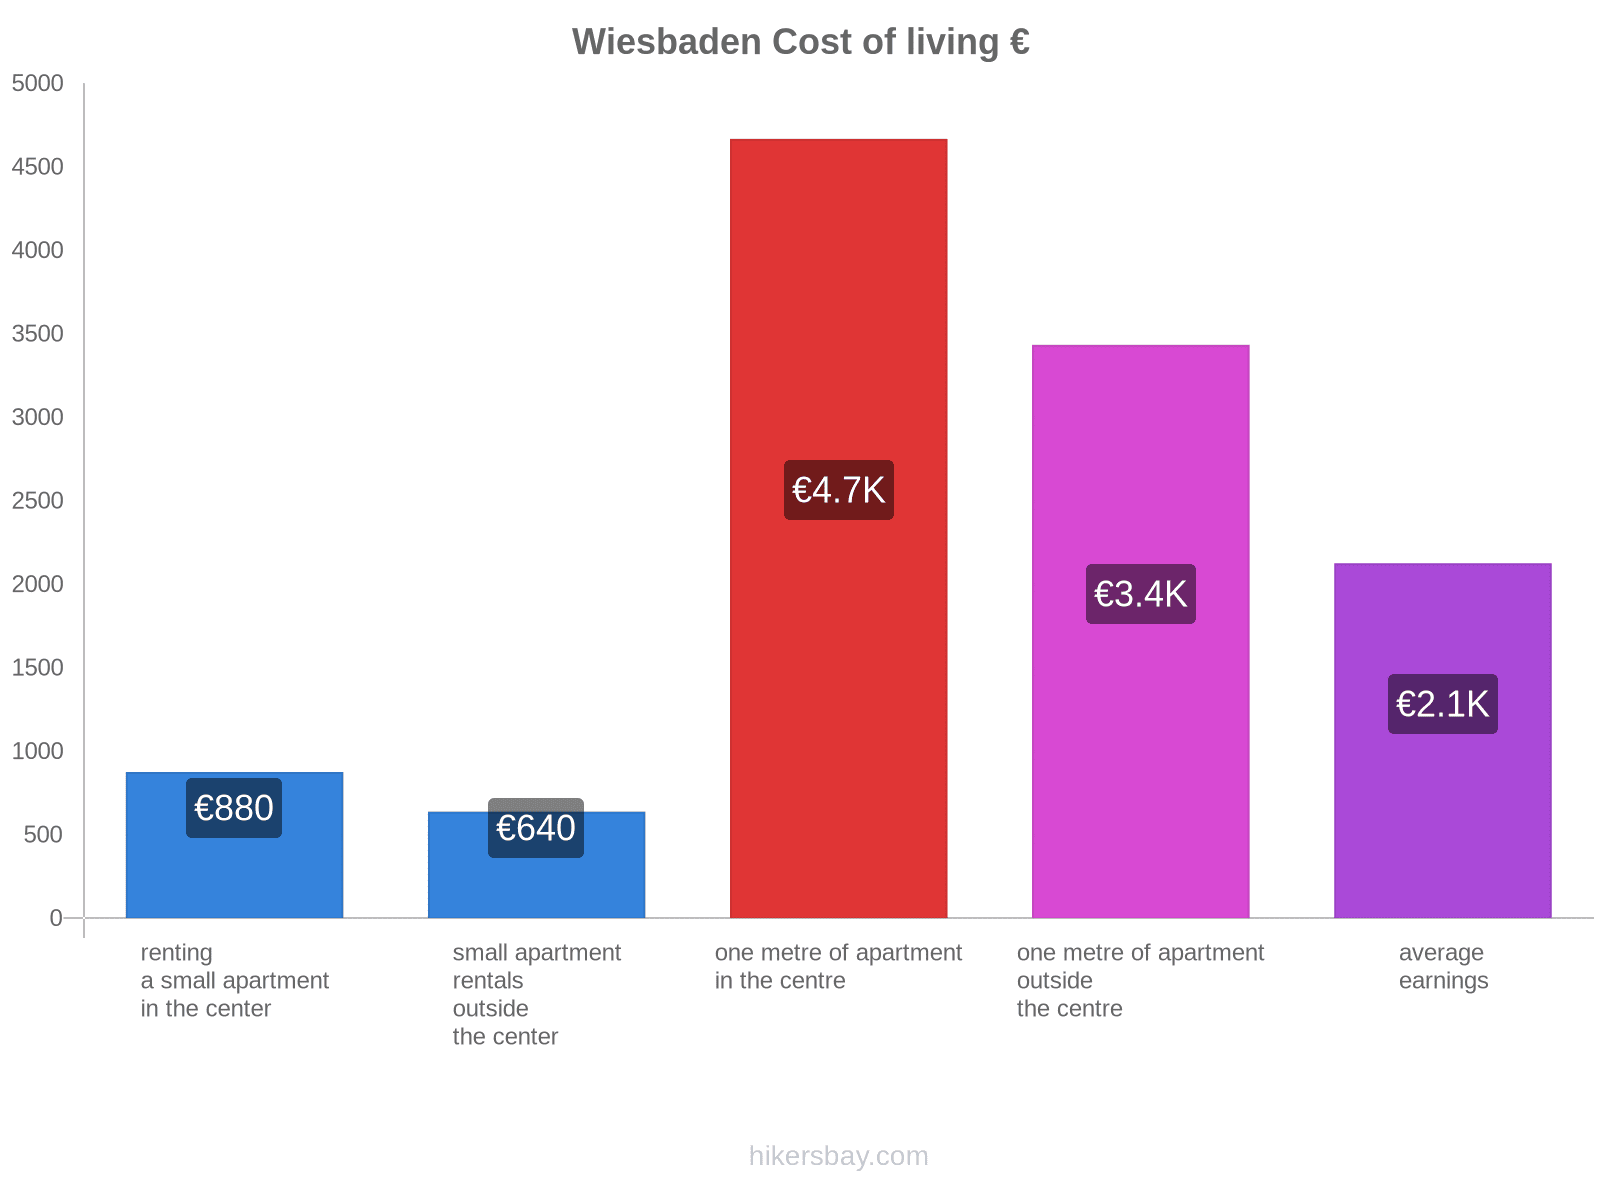 Wiesbaden cost of living hikersbay.com